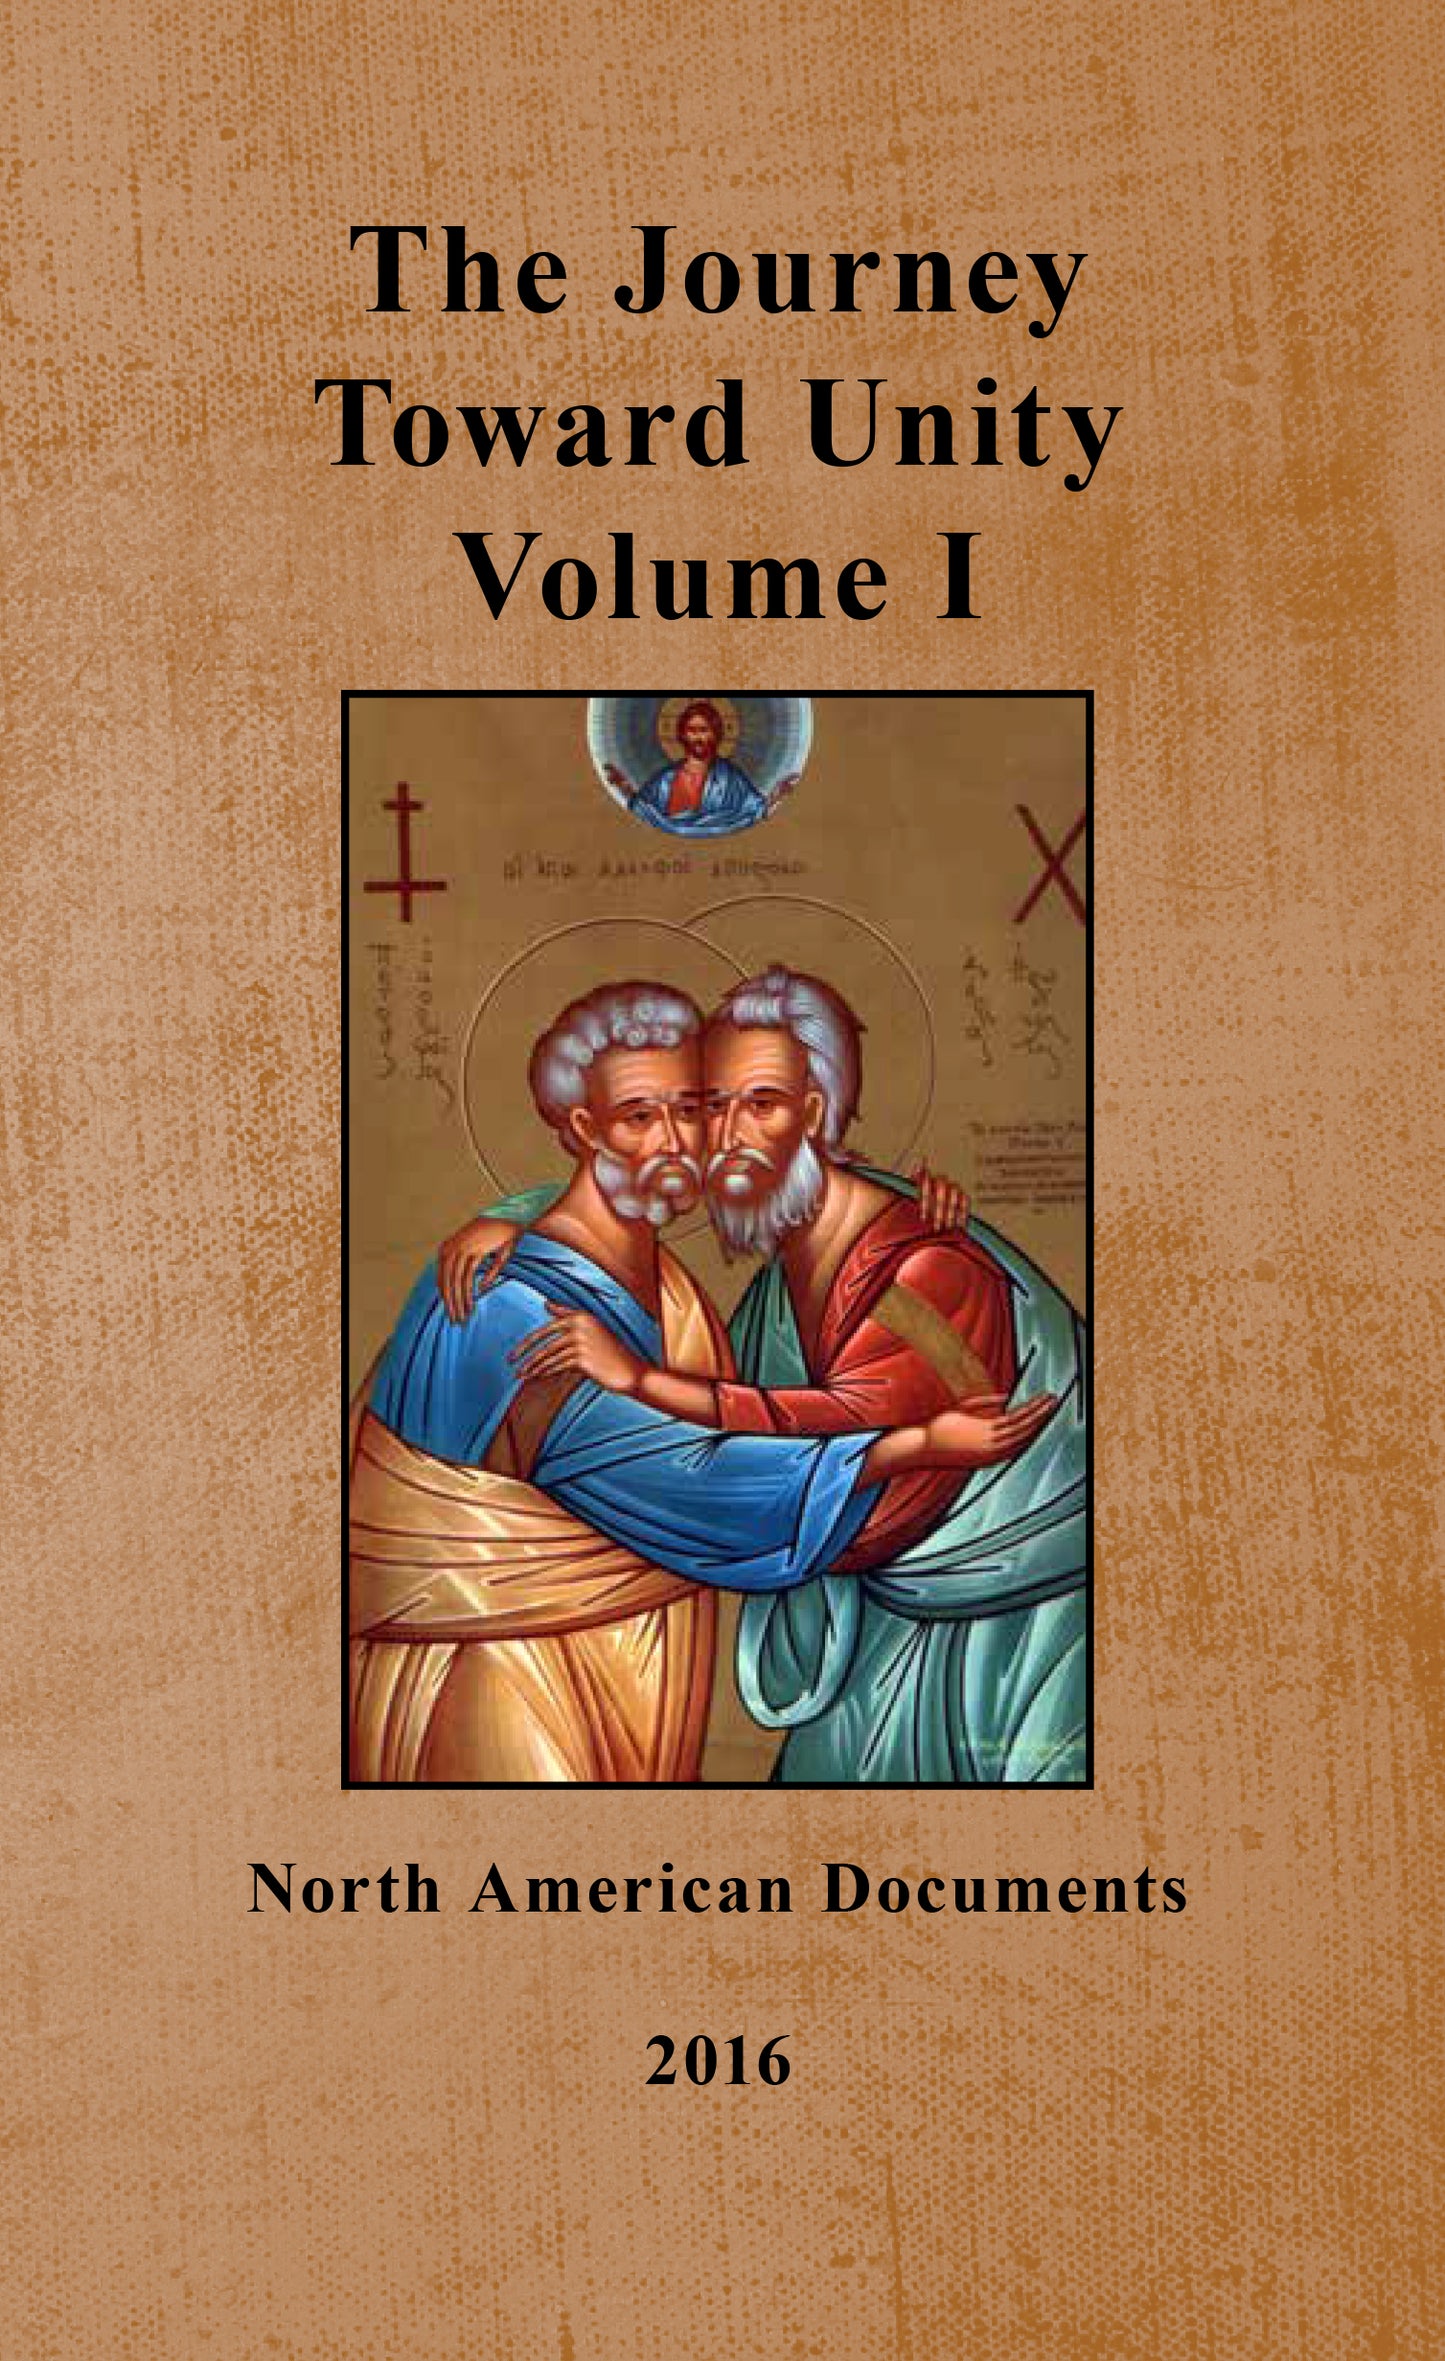 The Journey Toward Unity: Volume I